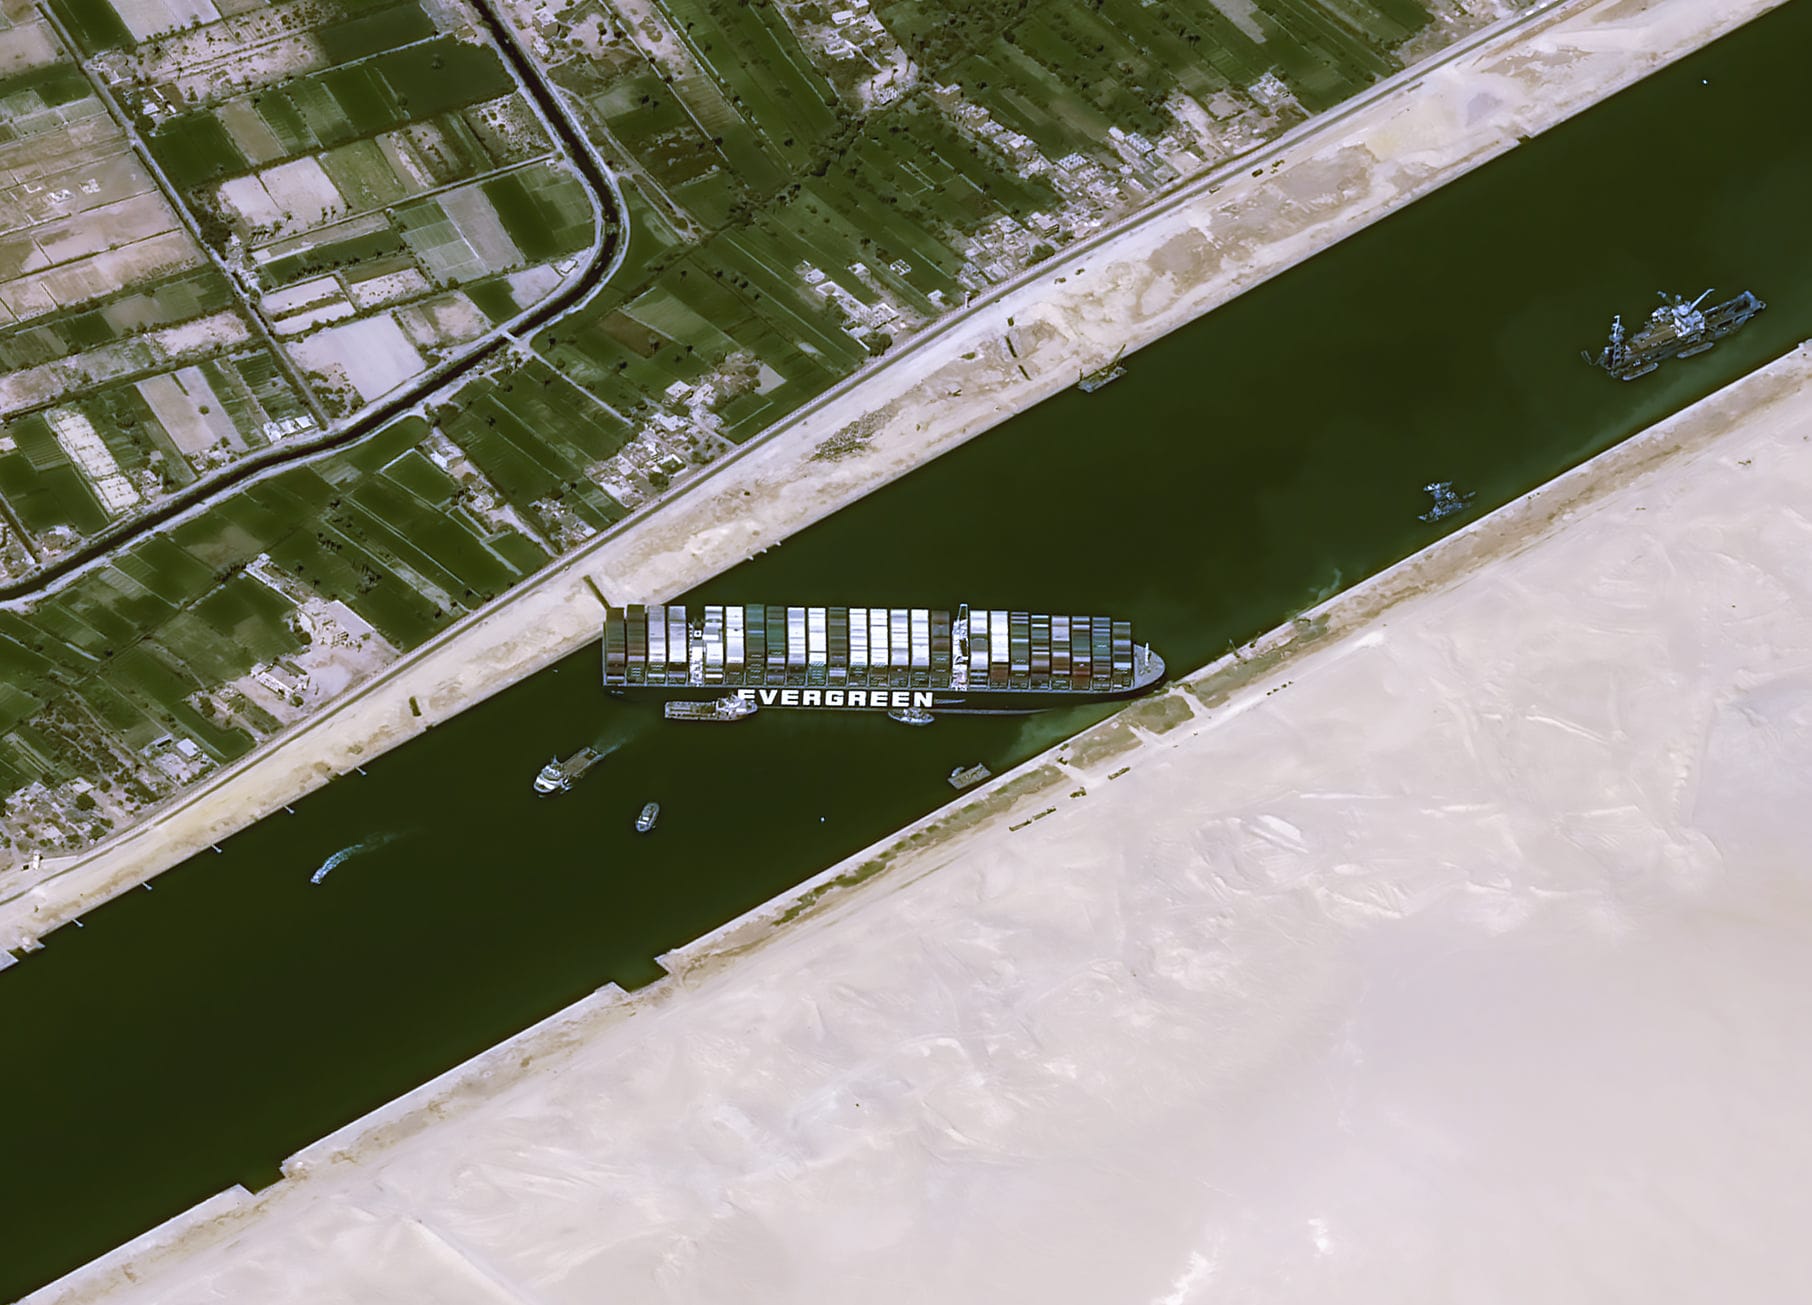 Das am Donnerstag veröffentlichte Satellitenbild zeigt das Schiff, das in der Nacht zum 24. März im Suezkanal auf Grund gelaufen war und die wichtige Schifffahrtsstraße zwischen Asien und Europa blockierte. Durch den Kanal werden etwa 30 Prozent des weltweiten Containervolumens verschifft und etwa zwölf Prozent aller Waren.